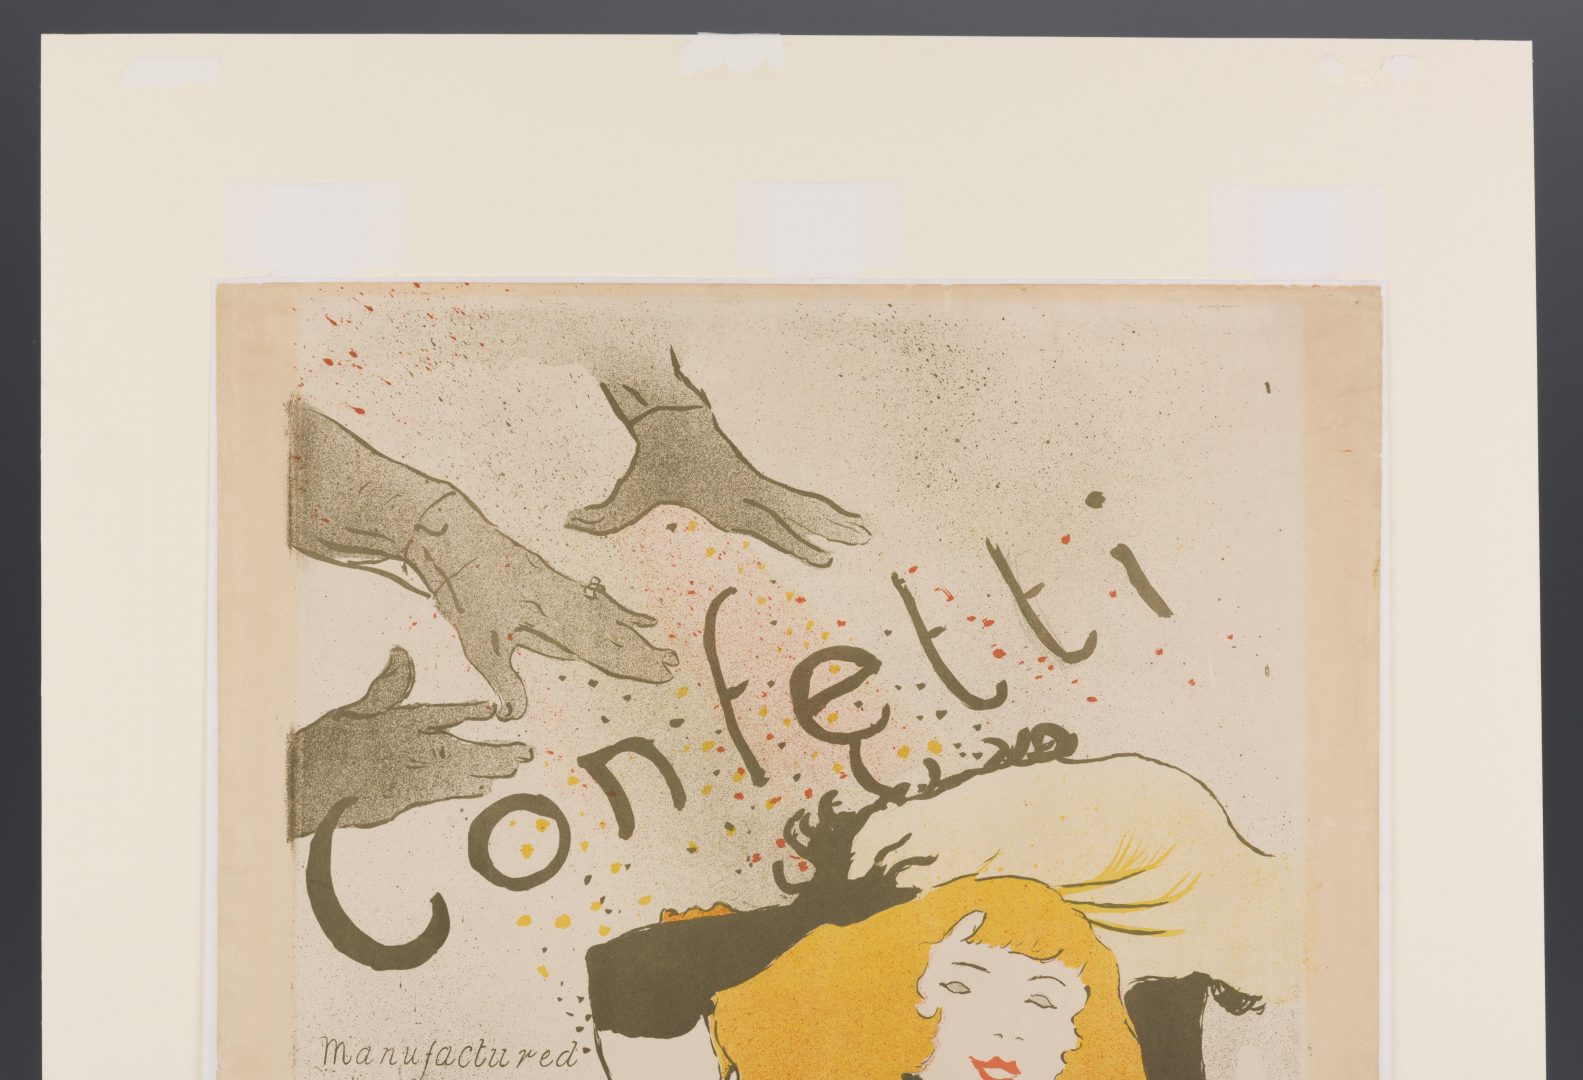 Lot 99: Toulouse Lautrec Lithograph, Confetti